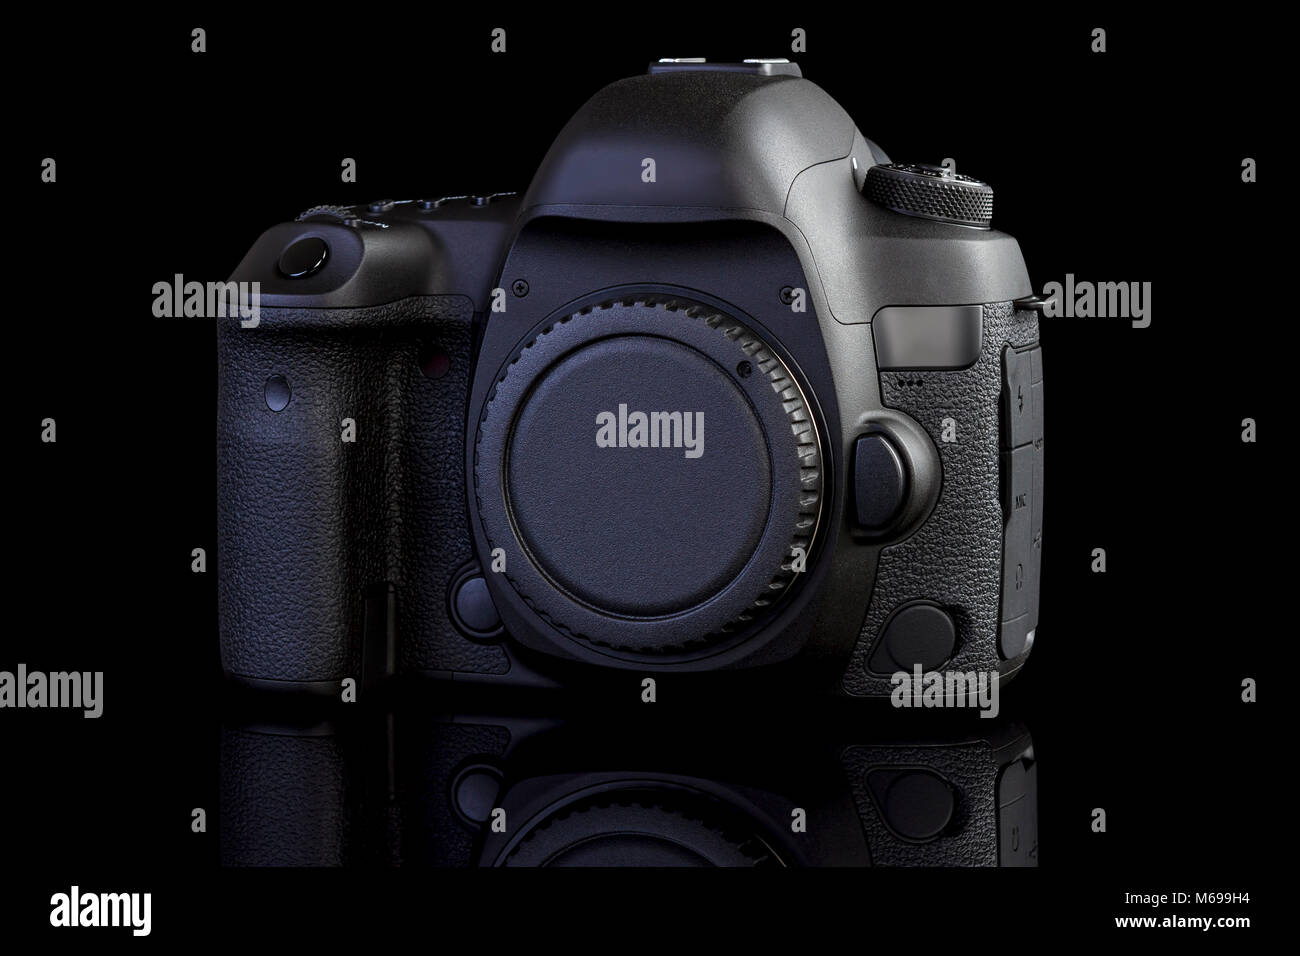 Fotocamera reflex digitale vista frontale in vetro nero lo sfondo Foto Stock